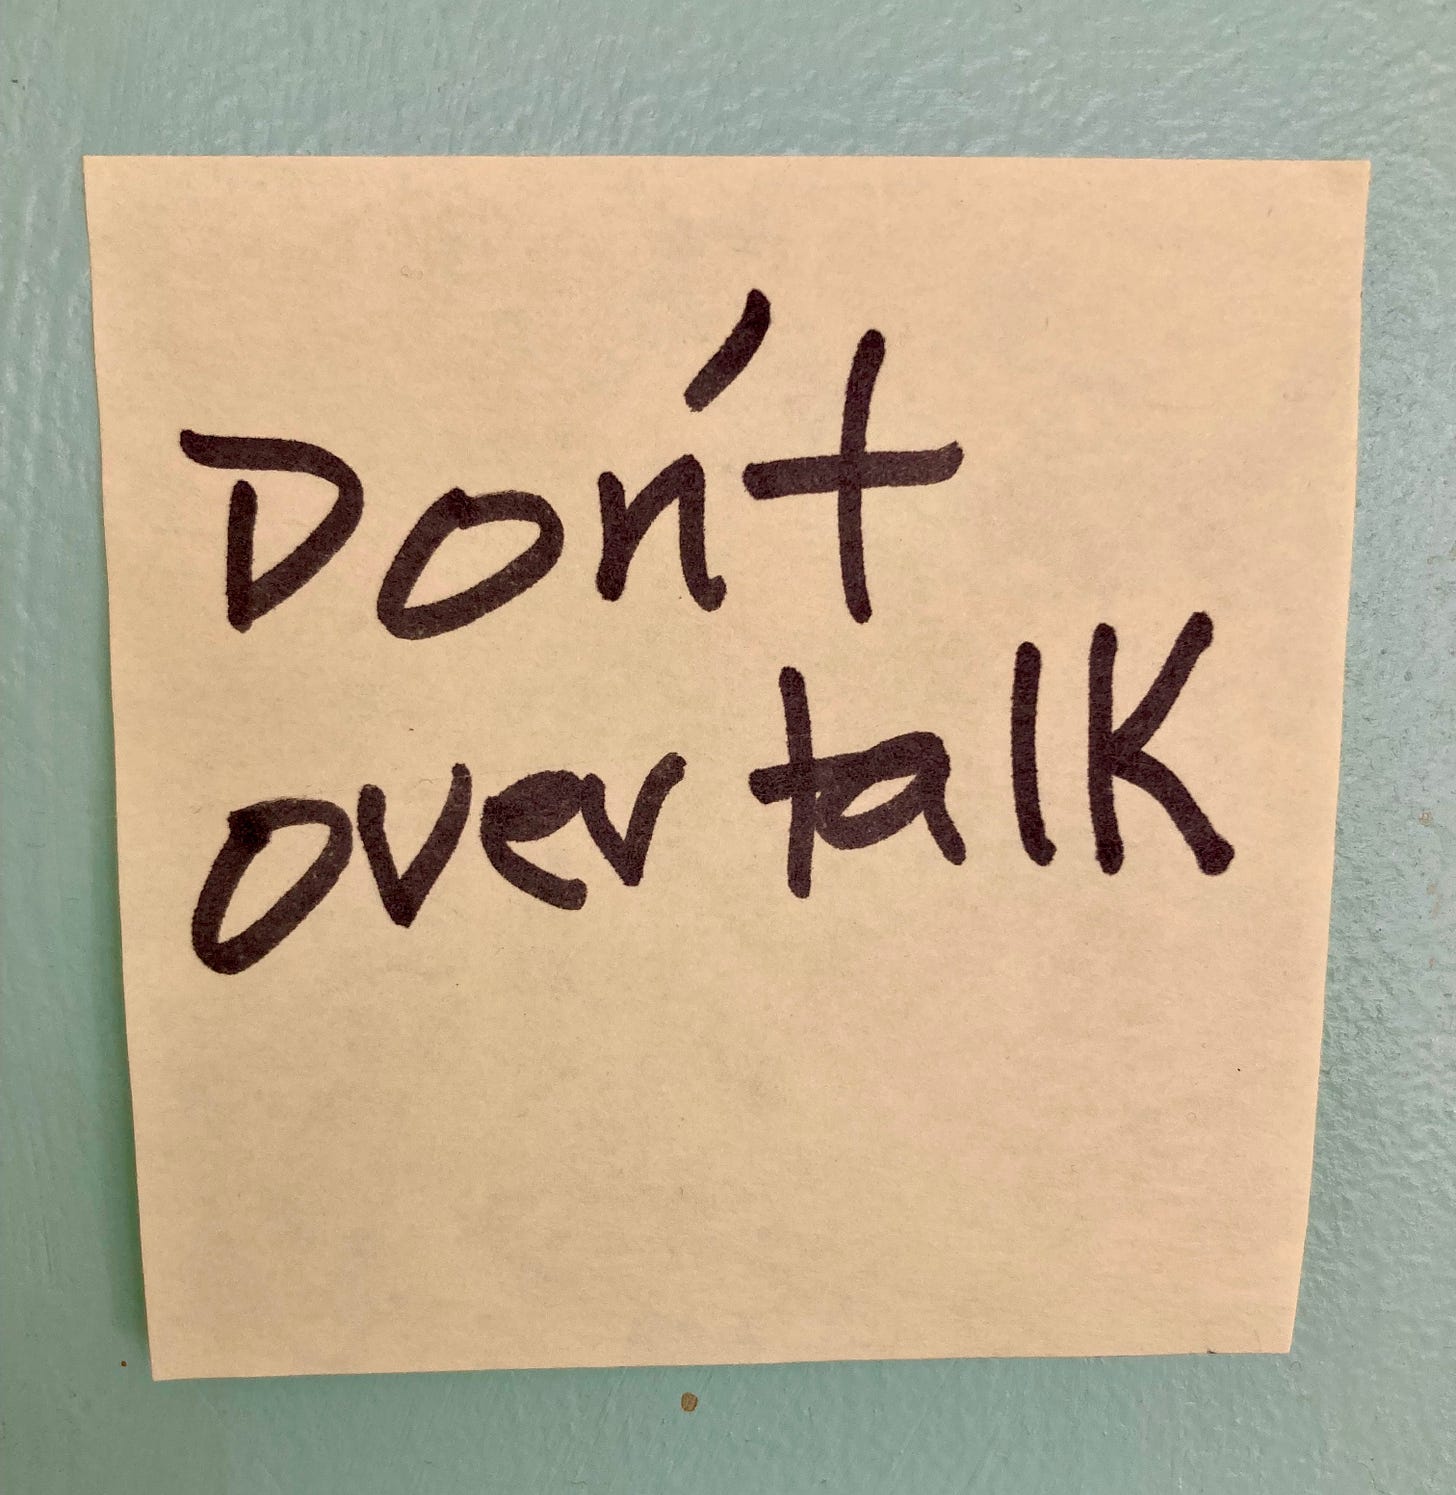 Post-it on wall: "Don't overtalk"